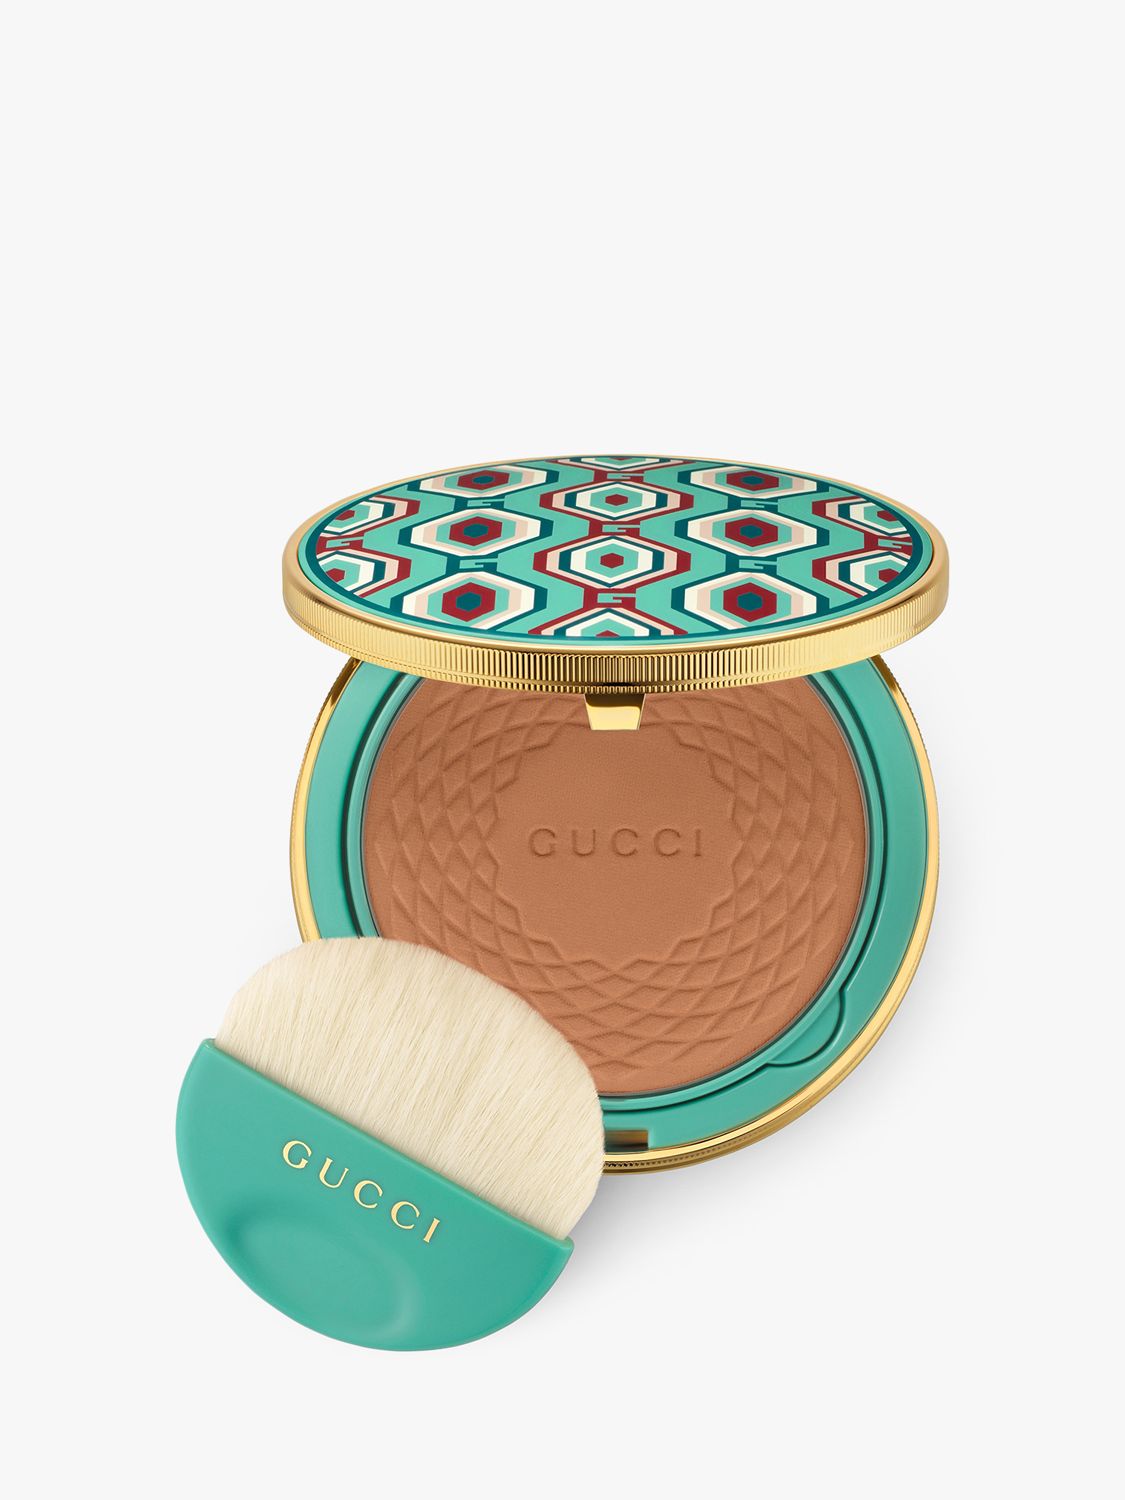 Gucci Poudre de Beauté Eclat Soleil Bronzing Powder Limited Edition, 03 1